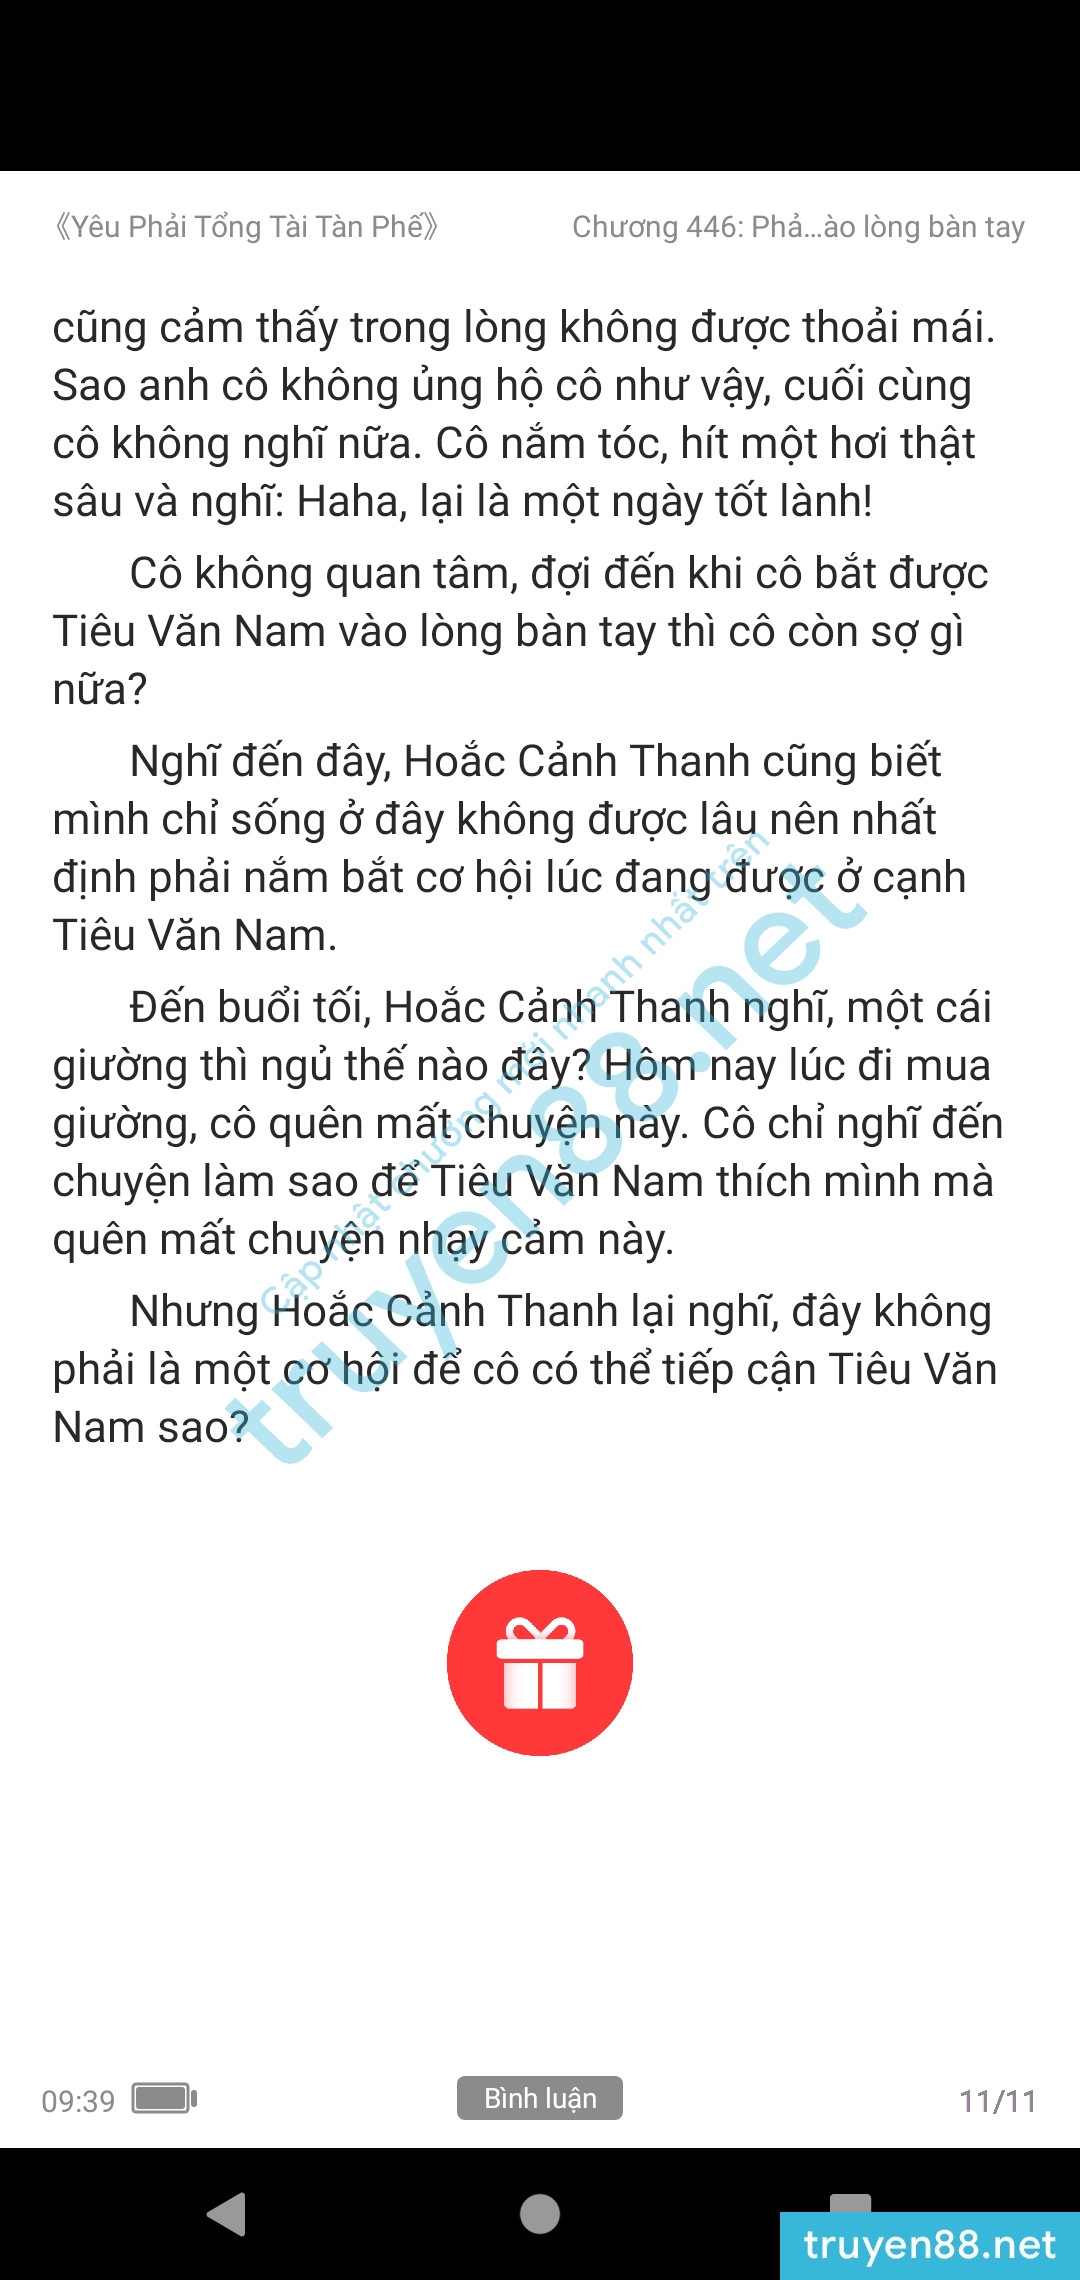 yeu-phai-tong-tai-tan-phe-439-0